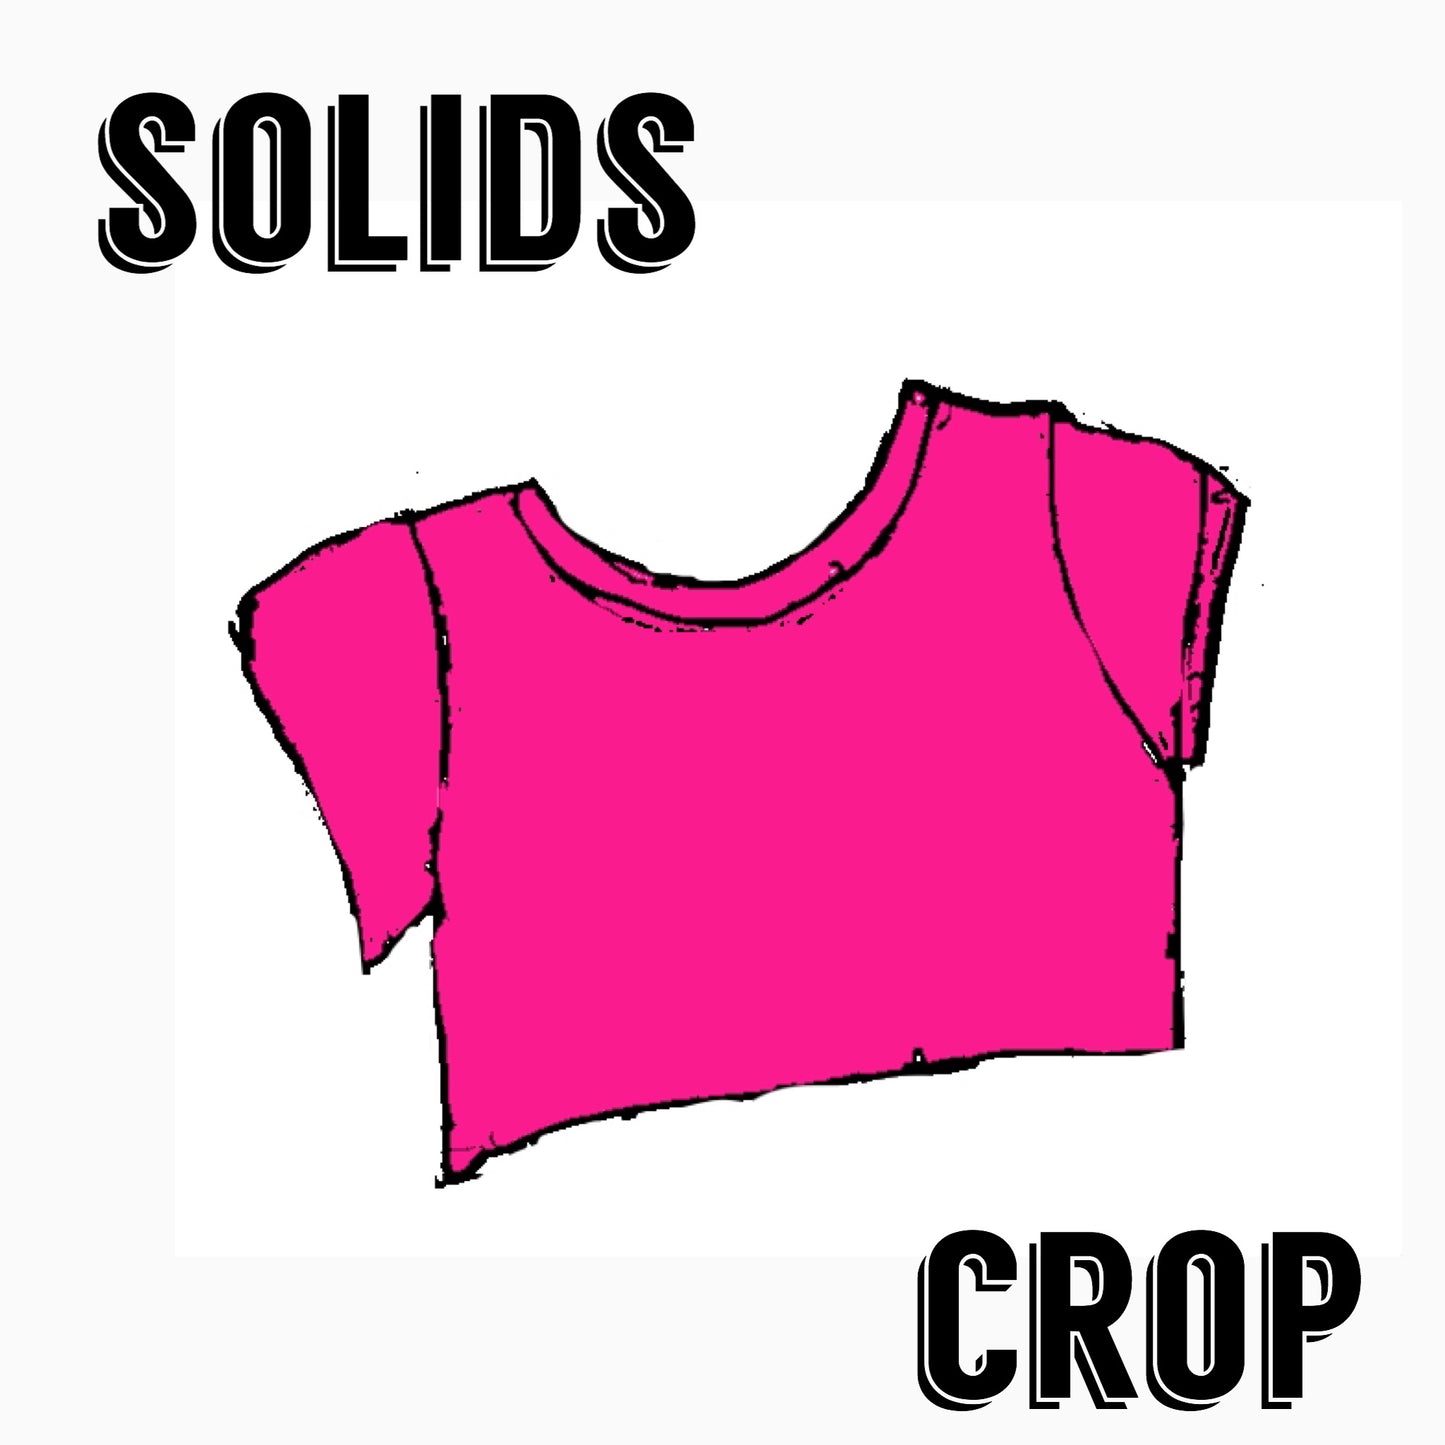 Solid Crop